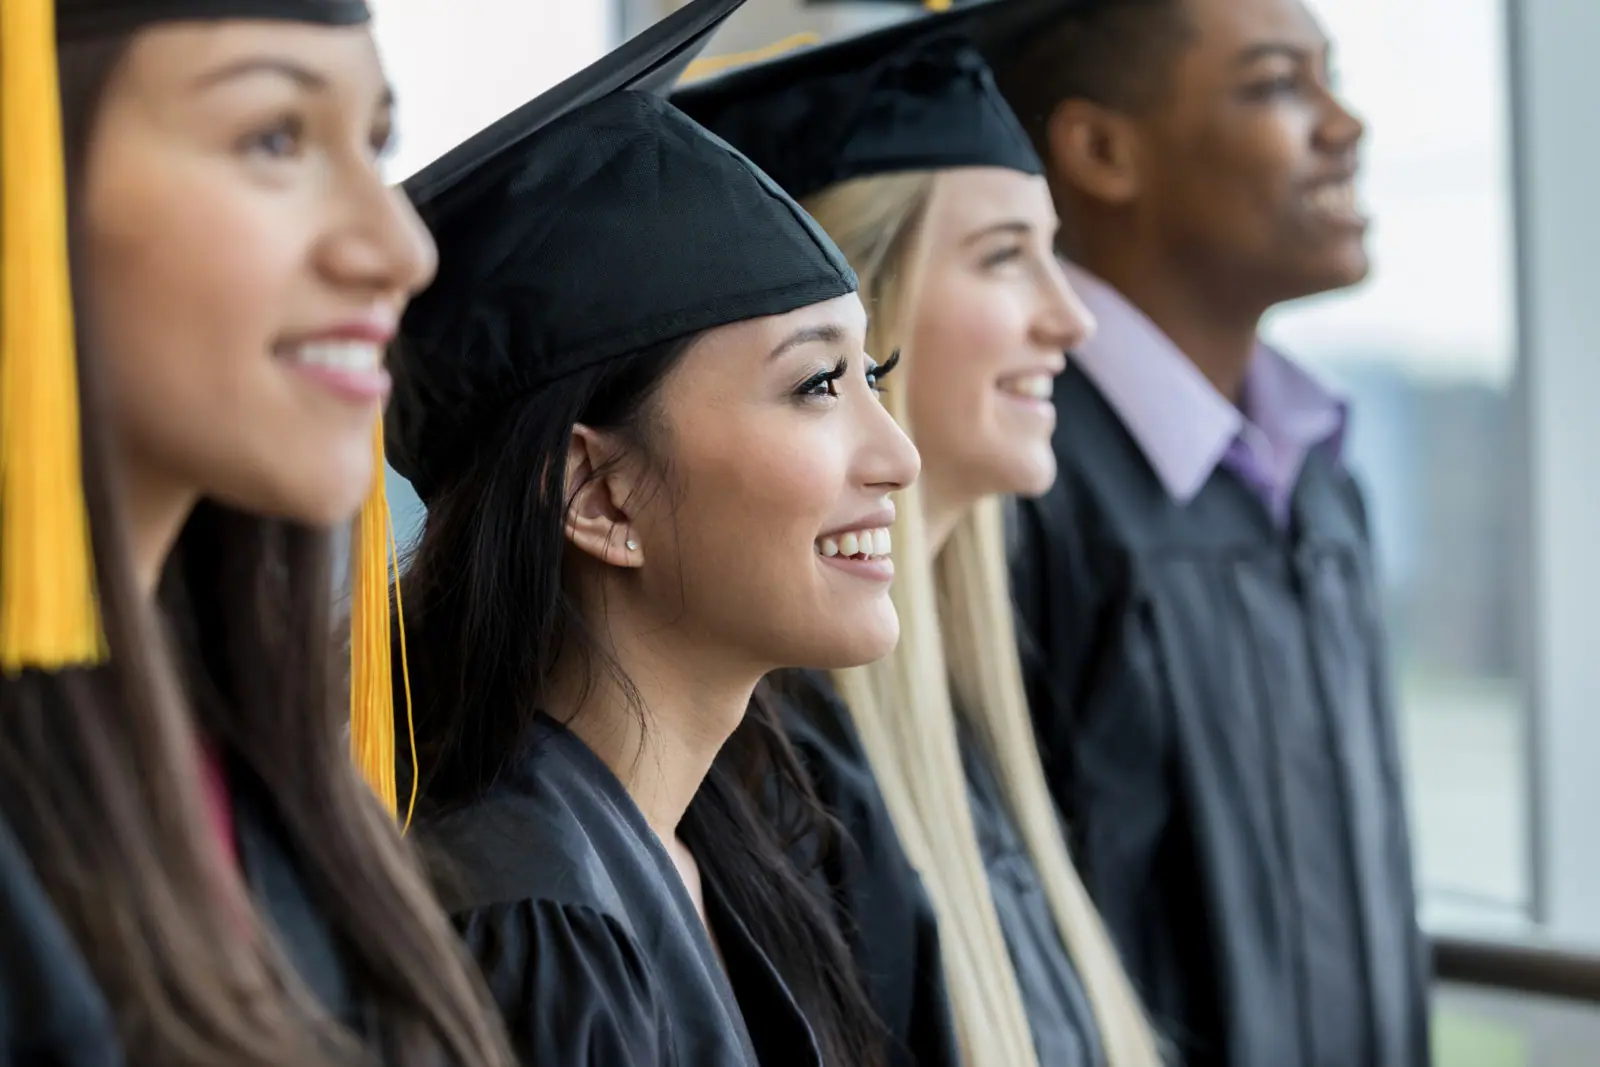 Get a Jumpstart on Hiring New College Grads